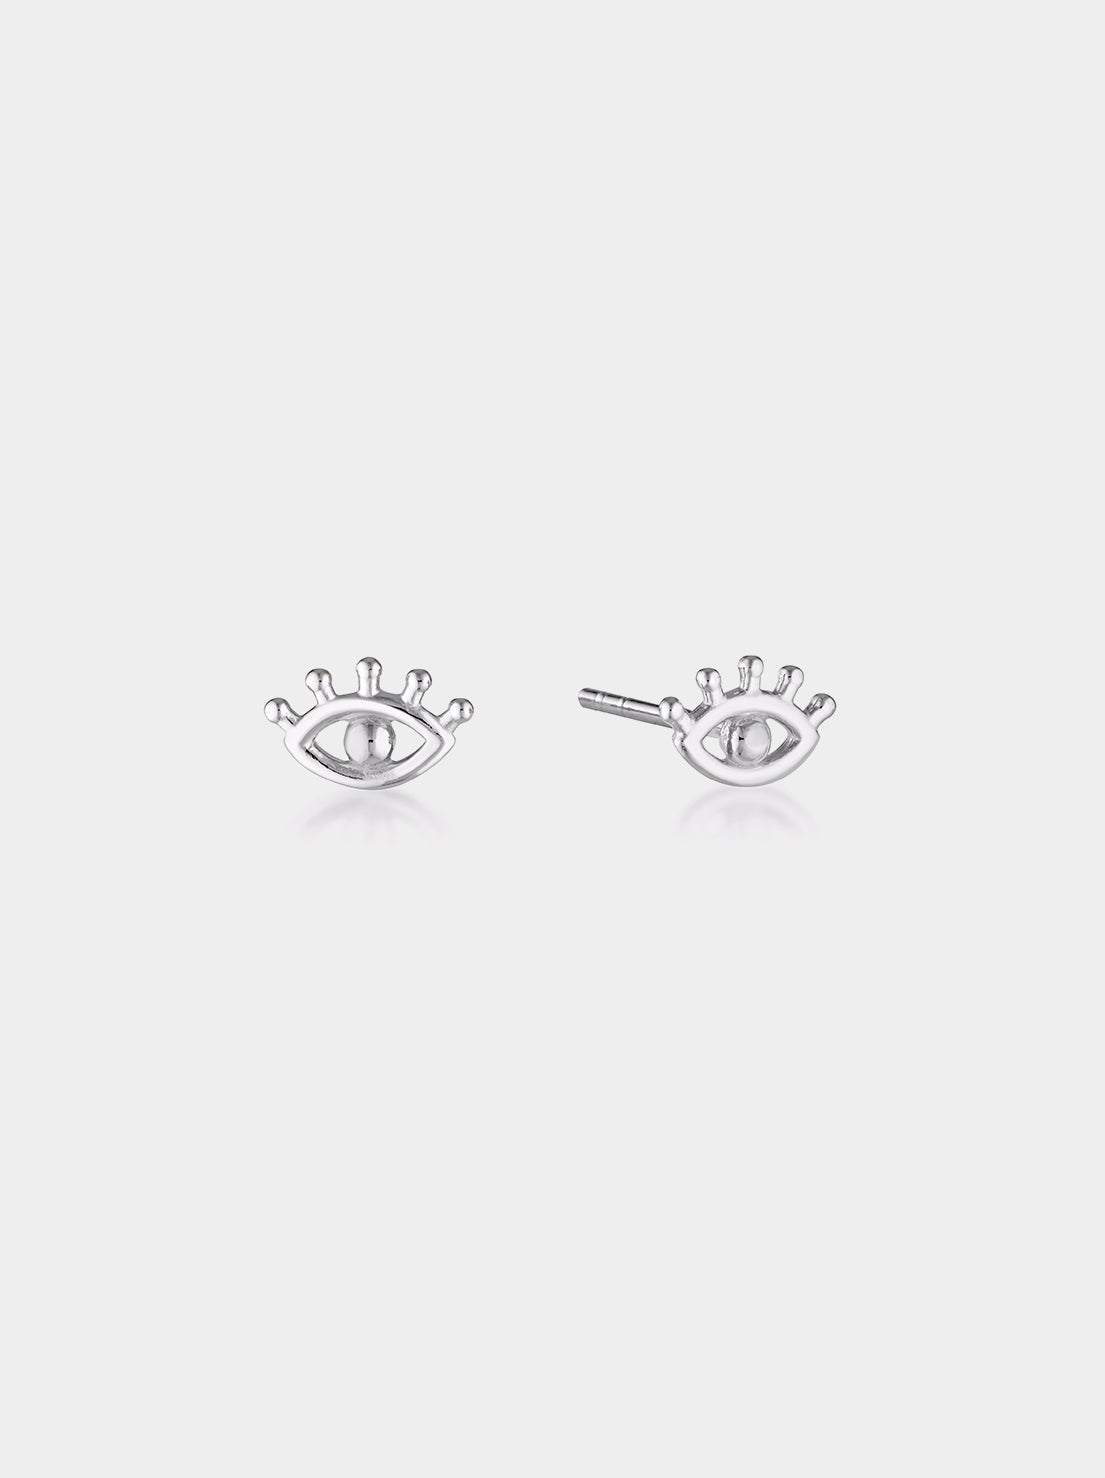 Linda Tahija - Evil Eye Stud Earrings - Sterling Silver